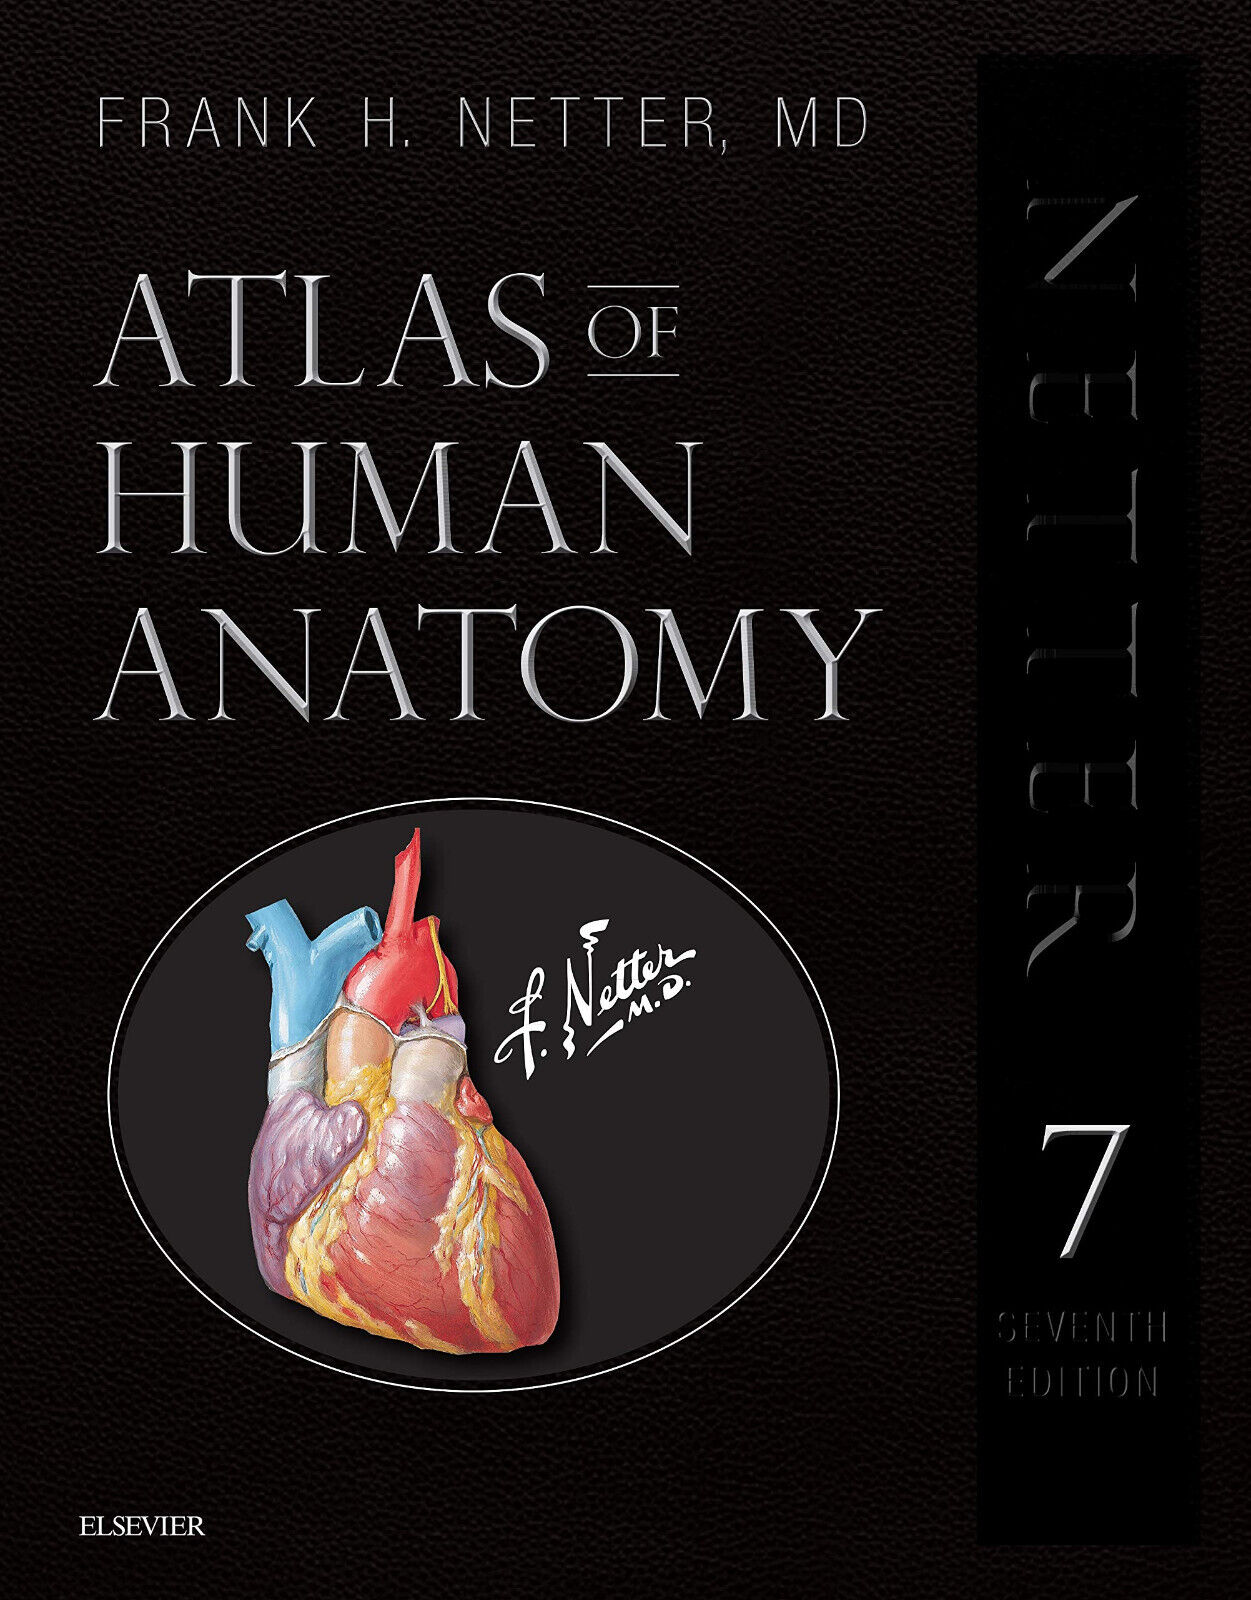 Atlas of Human Anatomy - Frank H. Netter - Elsevier, 2018